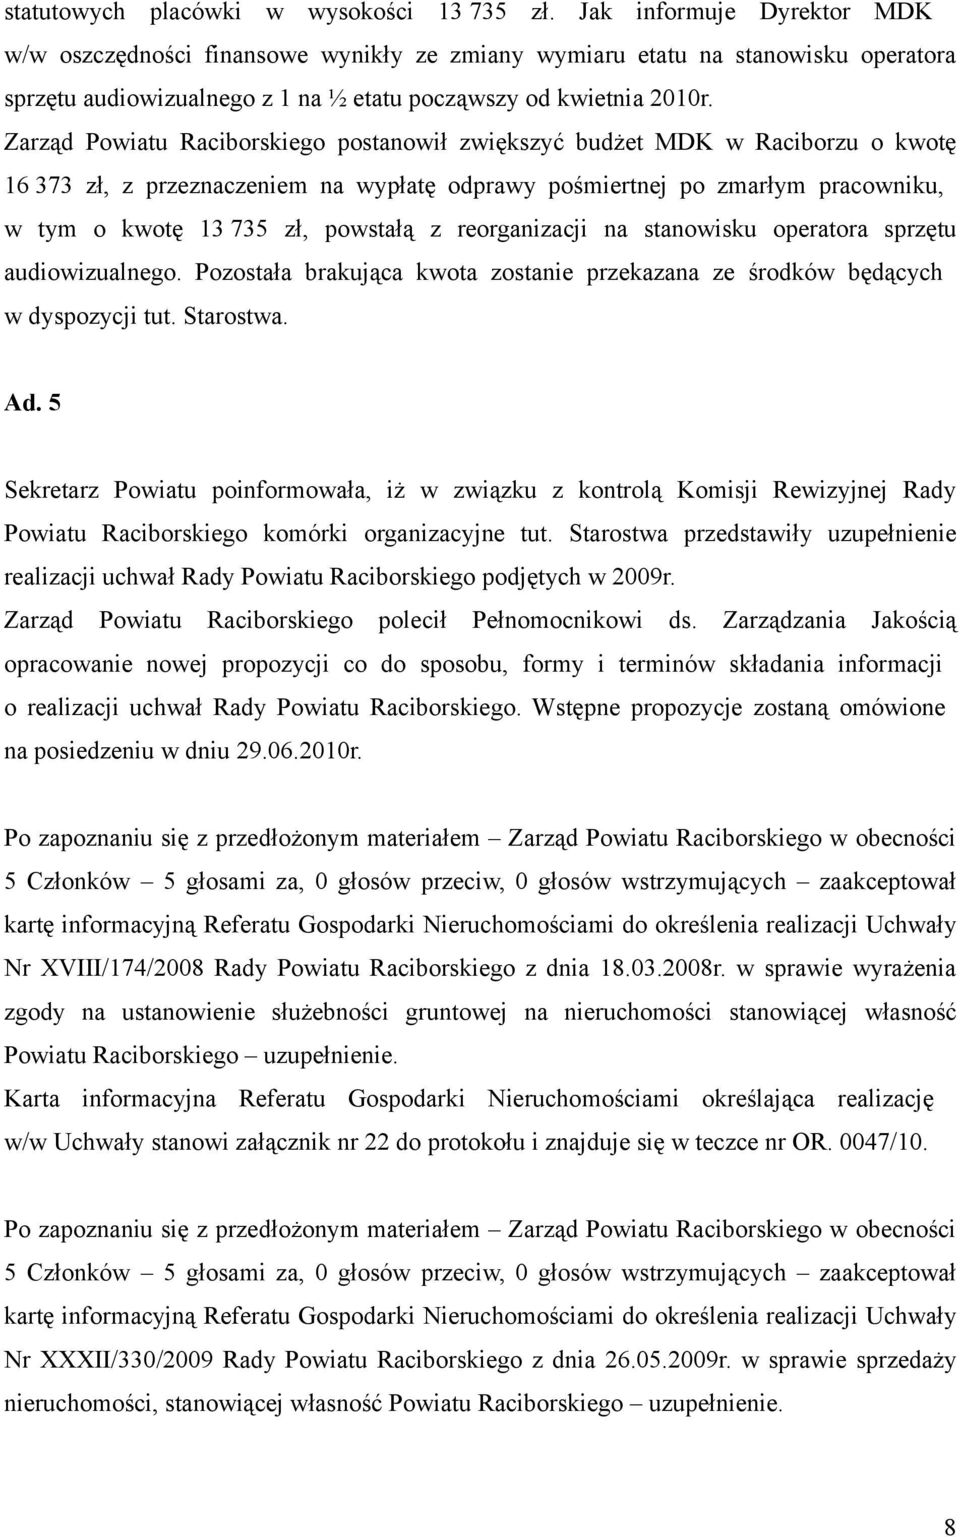 Zarząd Powiatu Raciborskiego postanowił zwiększyć budżet MDK w Raciborzu o kwotę 16 373 zł, z przeznaczeniem na wypłatę odprawy pośmiertnej po zmarłym pracowniku, w tym o kwotę 13 735 zł, powstałą z